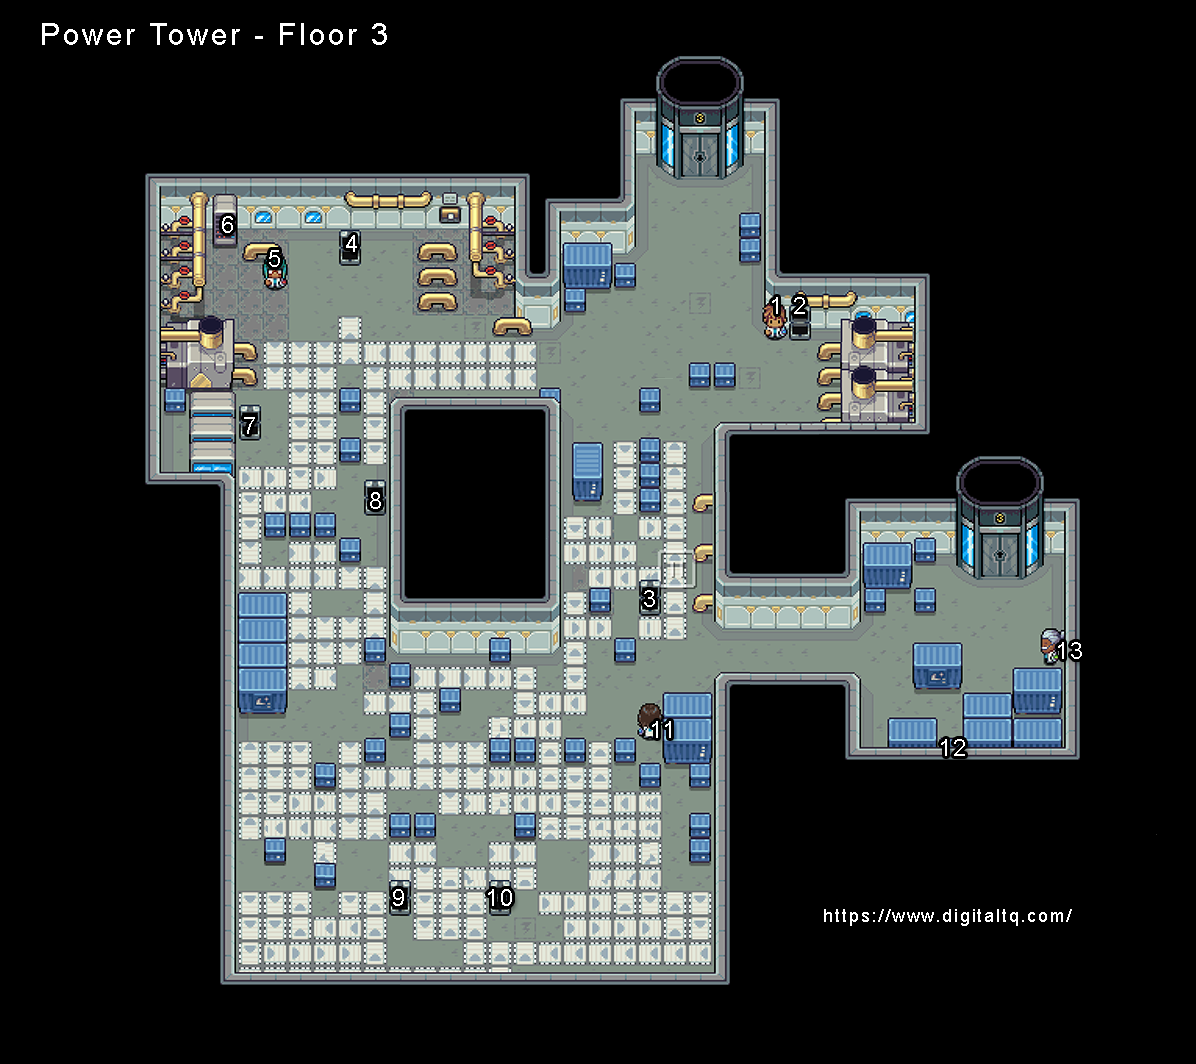 Power Tower Floor 3